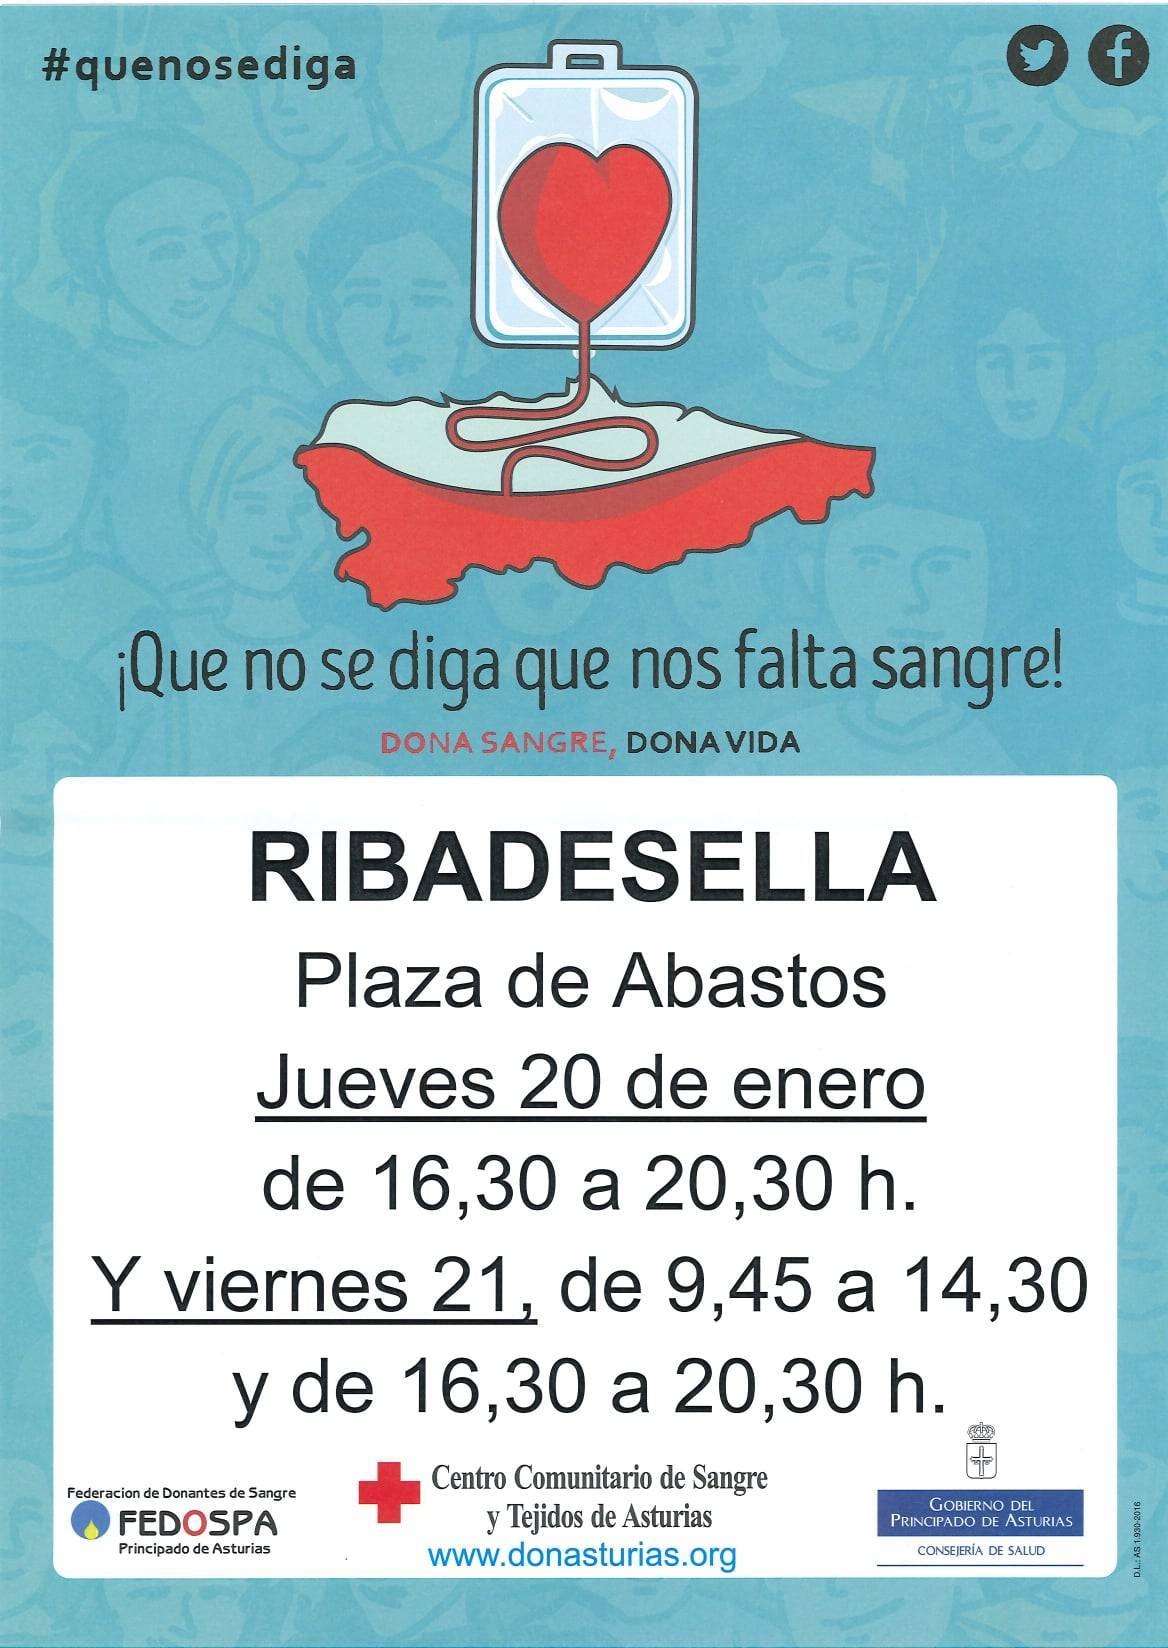 Donación de sangre (enero 2022) - Ribadesella (Asturias)